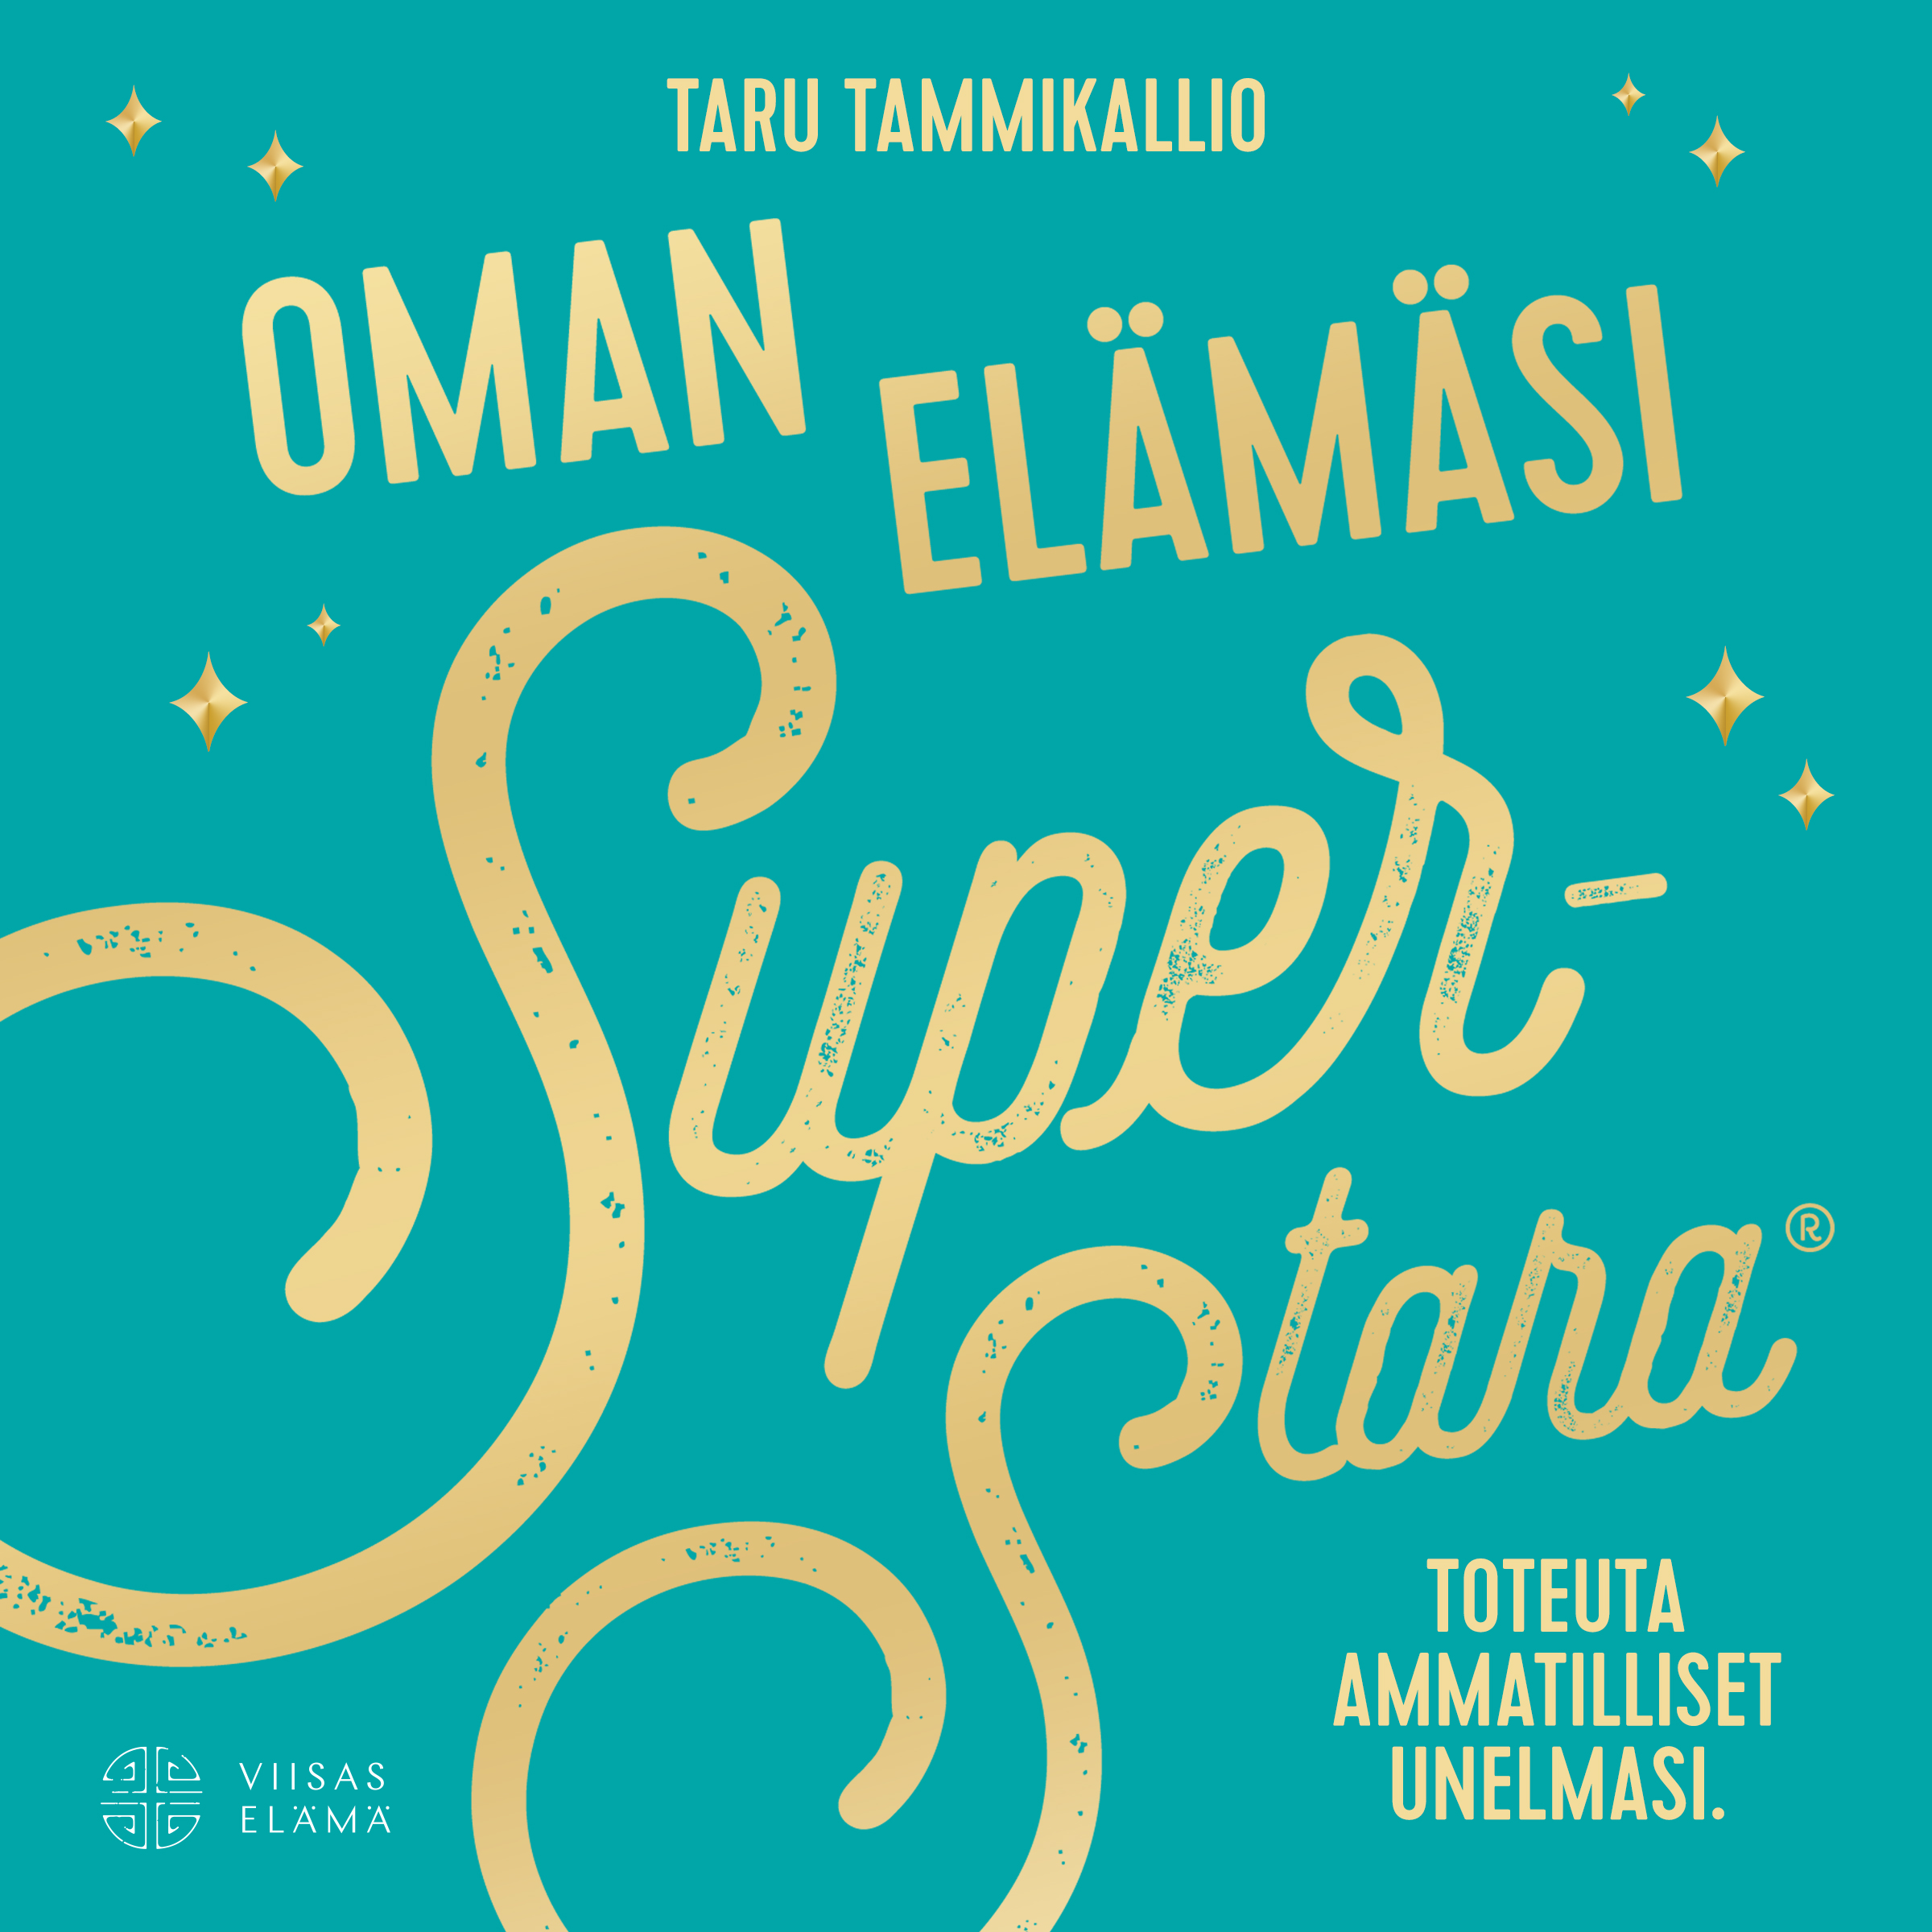 Tammikallio, Taru - Oman elämäsi superstara, äänikirja